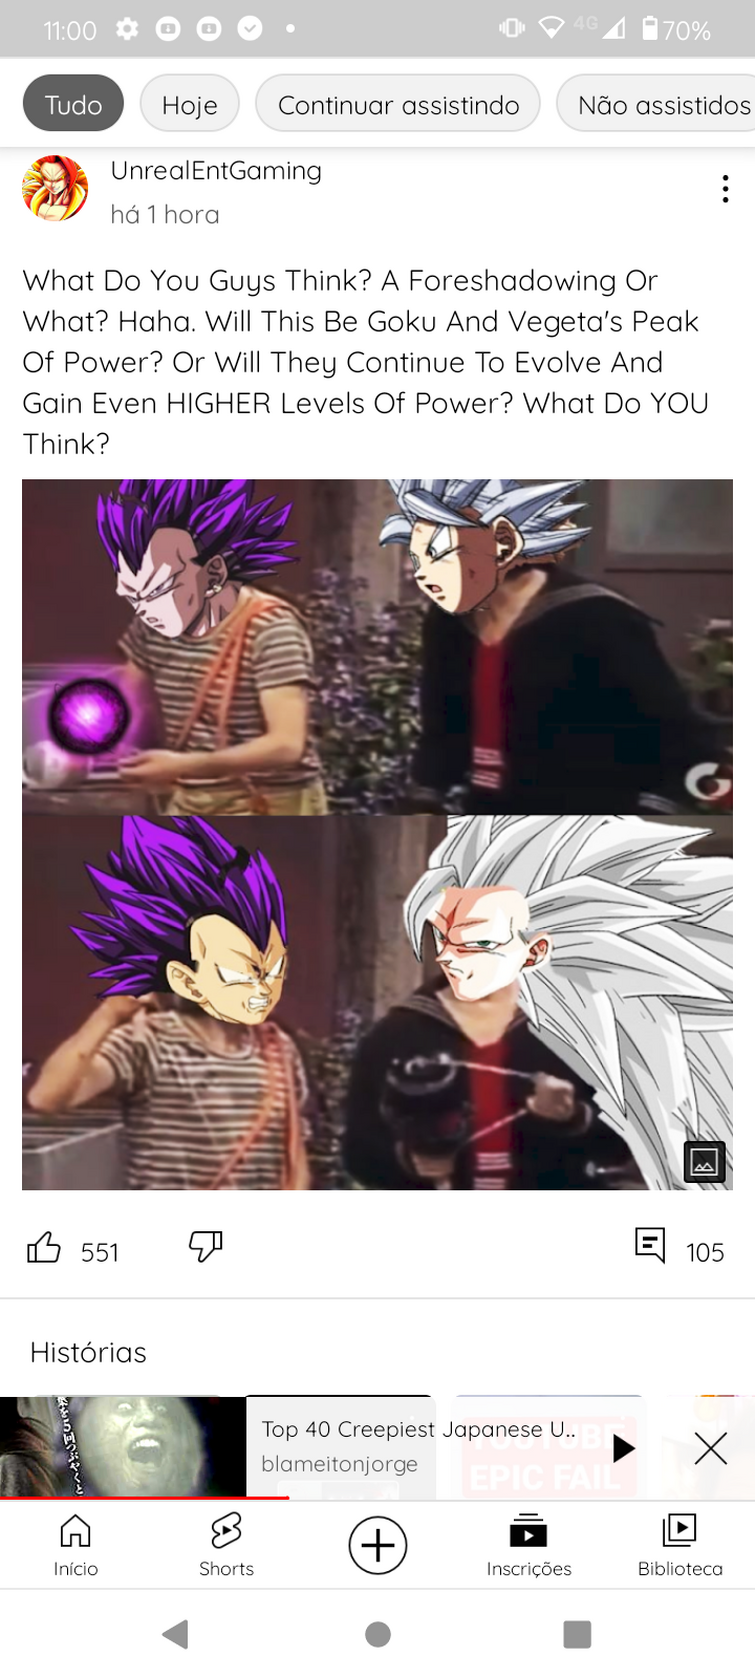 Goku Drip  Know Your Meme